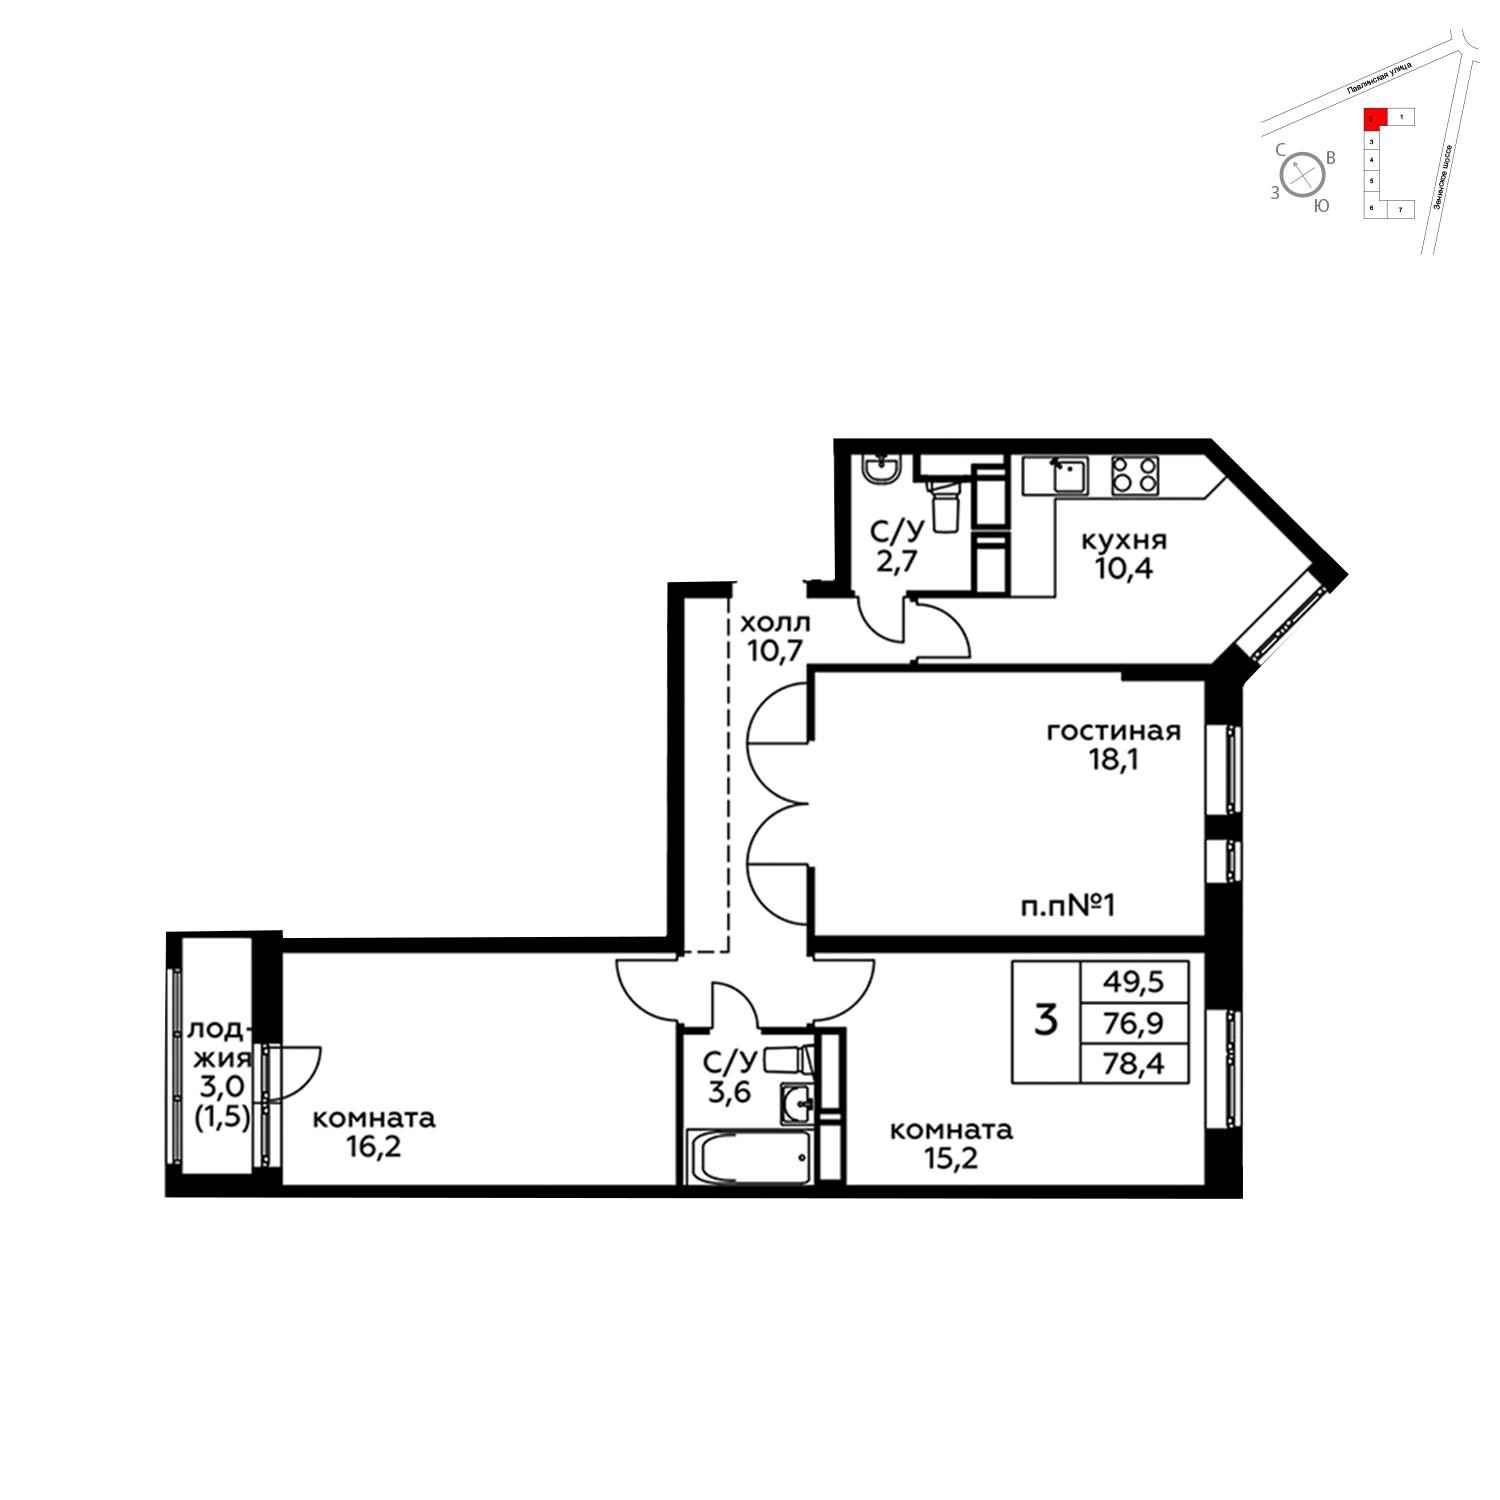 Продаётся 3-комнатная квартира в новостройке 78.4 кв.м. этаж 16/20 за 9 776 794 руб 